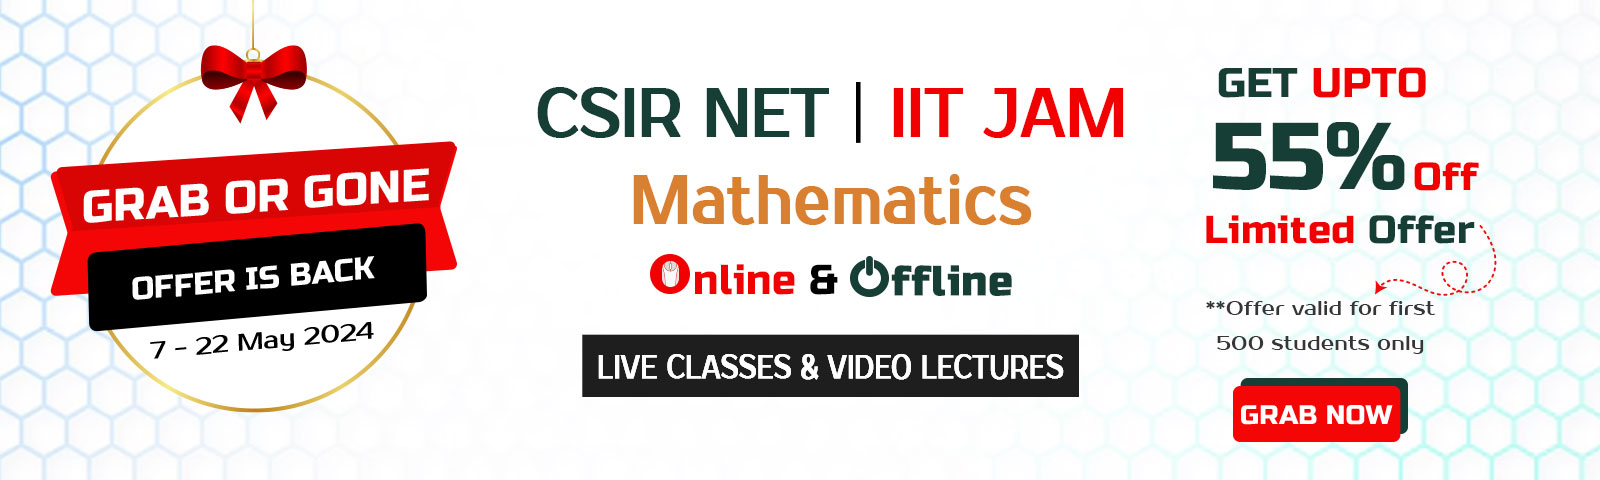 iit jam maths/stats Online Classes